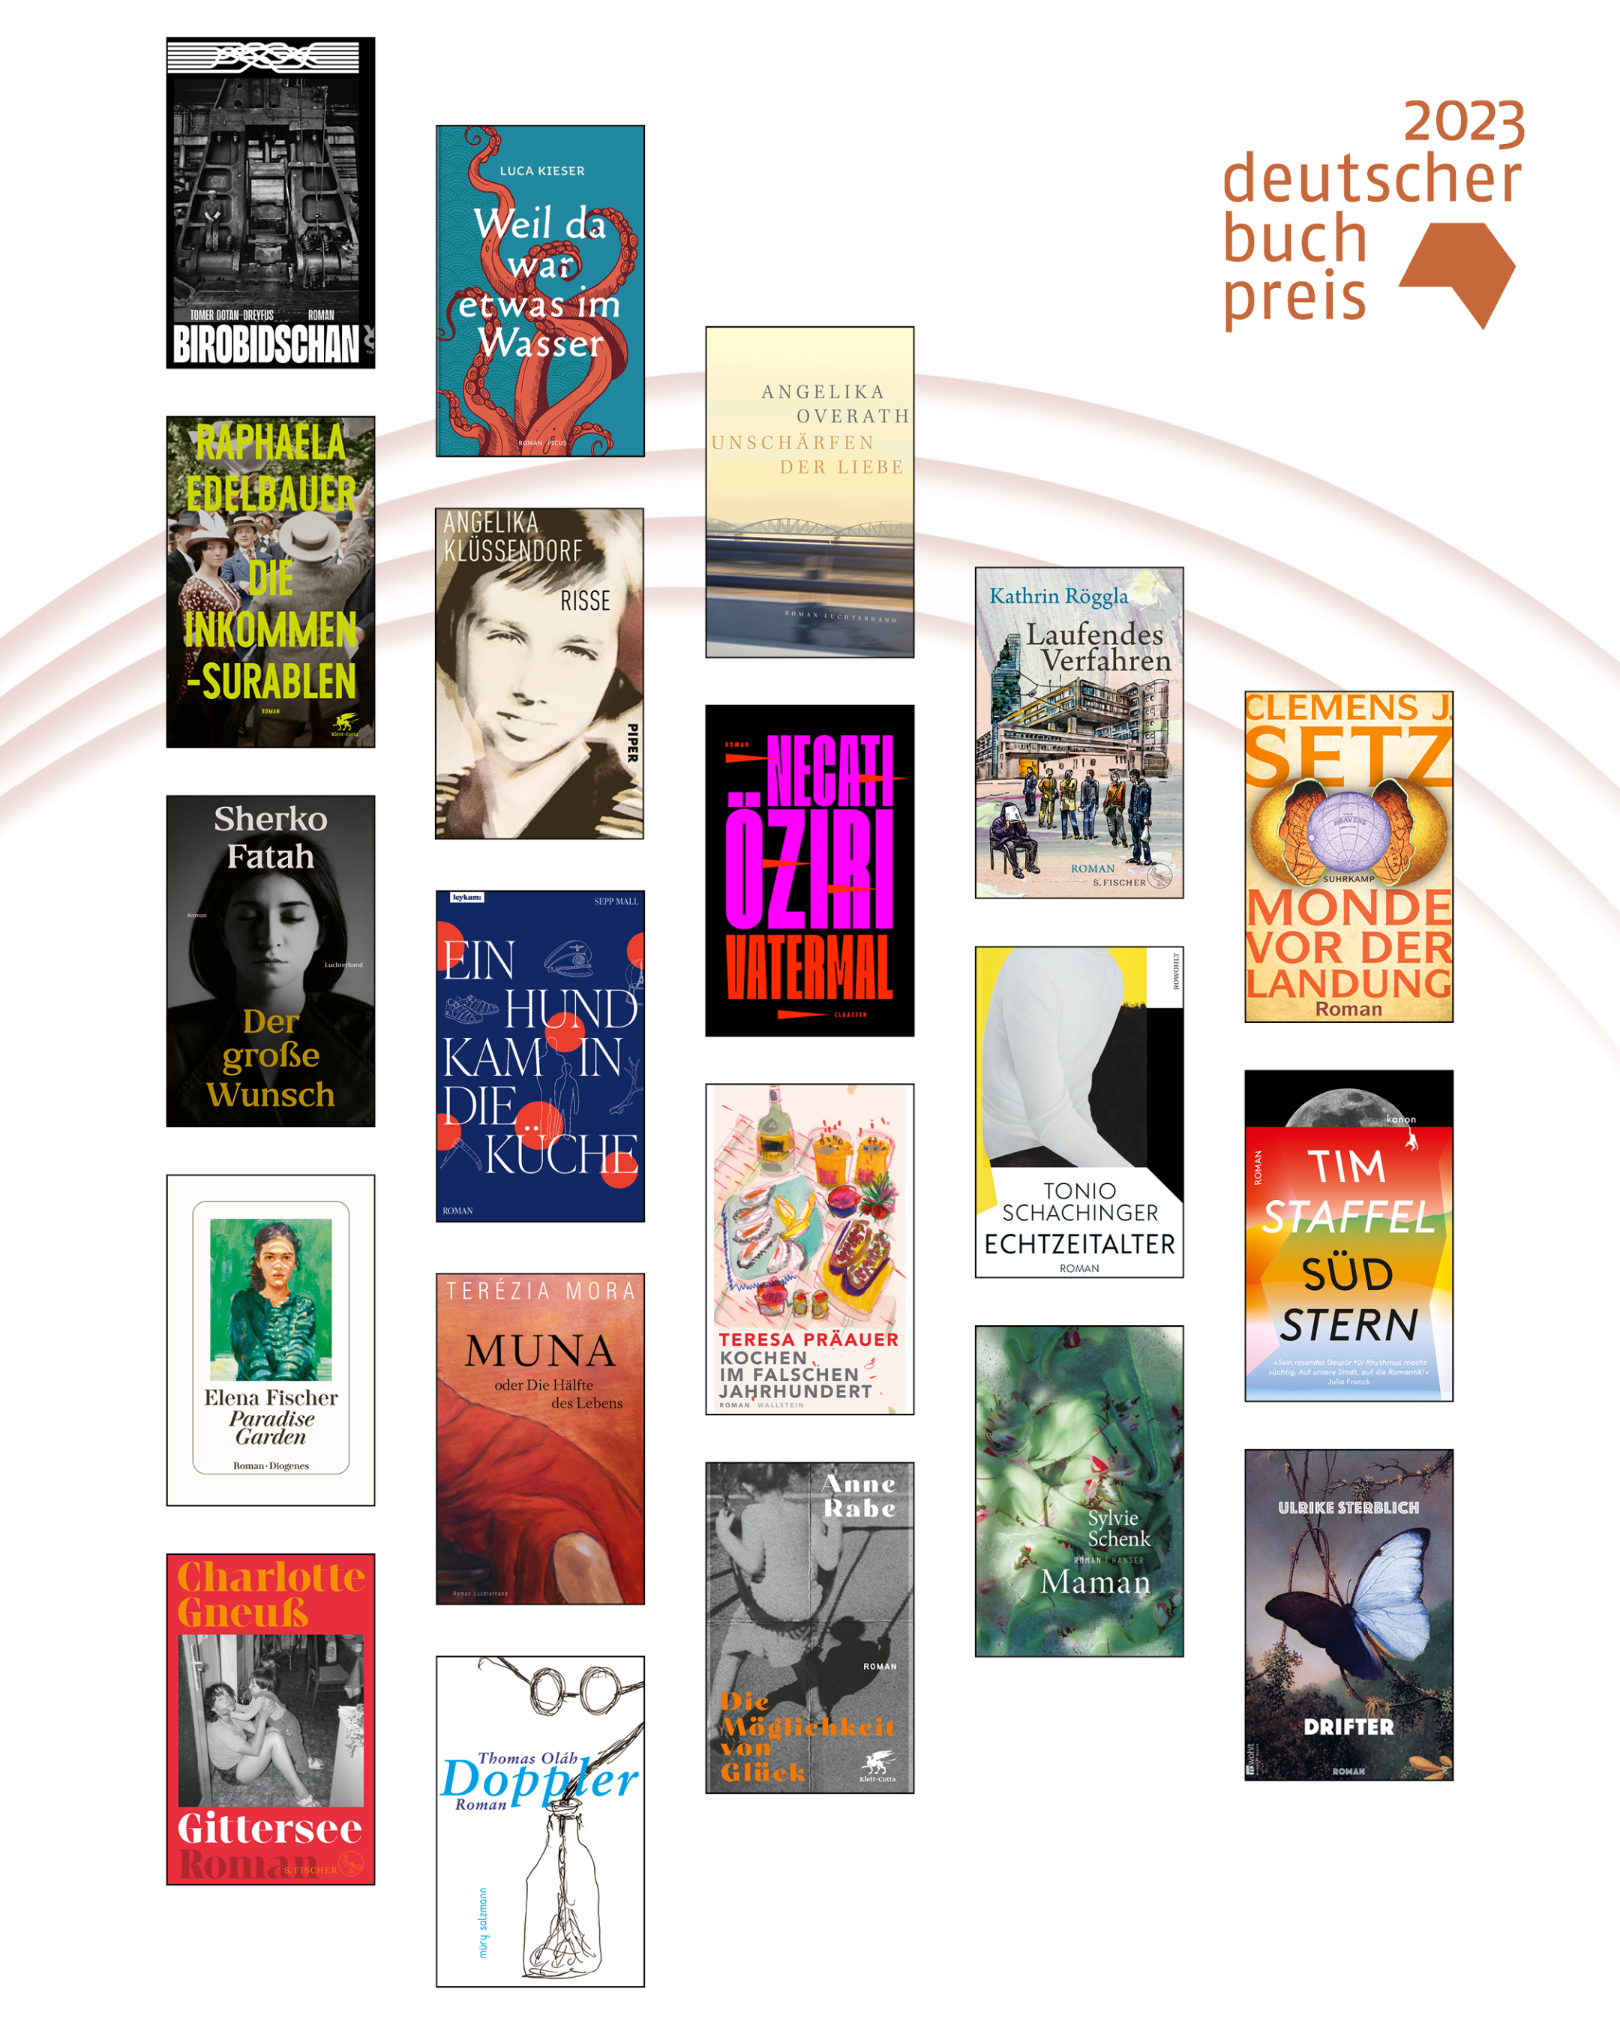 dbp23_Nominierte Bücher Longlist (c) Deutscher Buchpreis